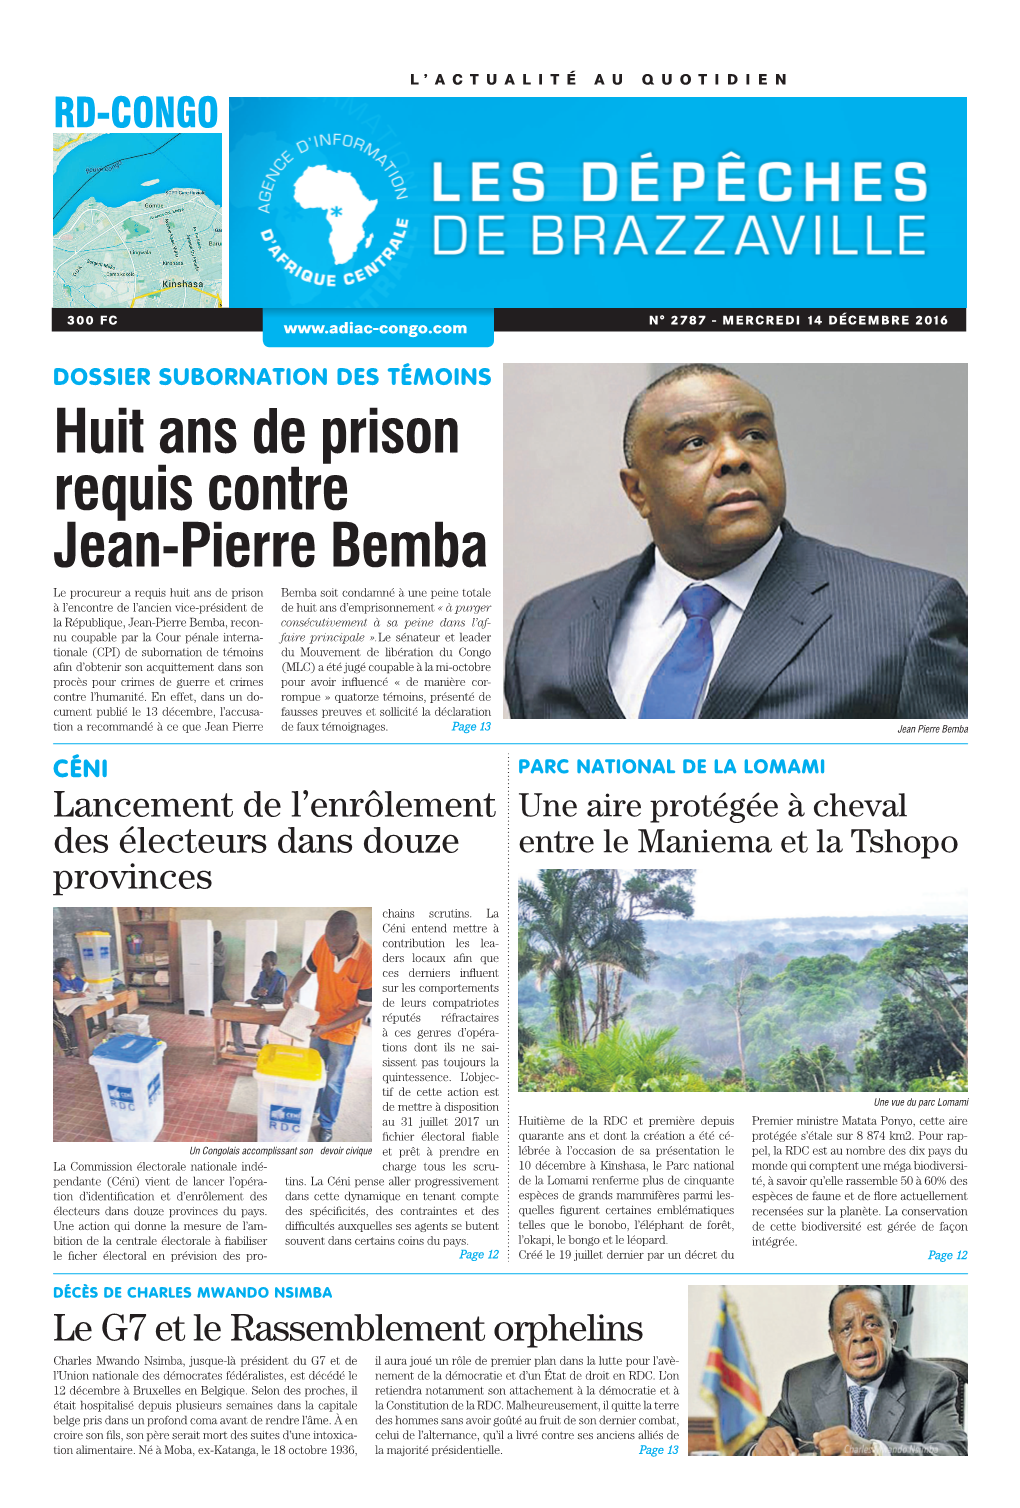 Huit Ans De Prison Requis Contre Jean-Pierre Bemba